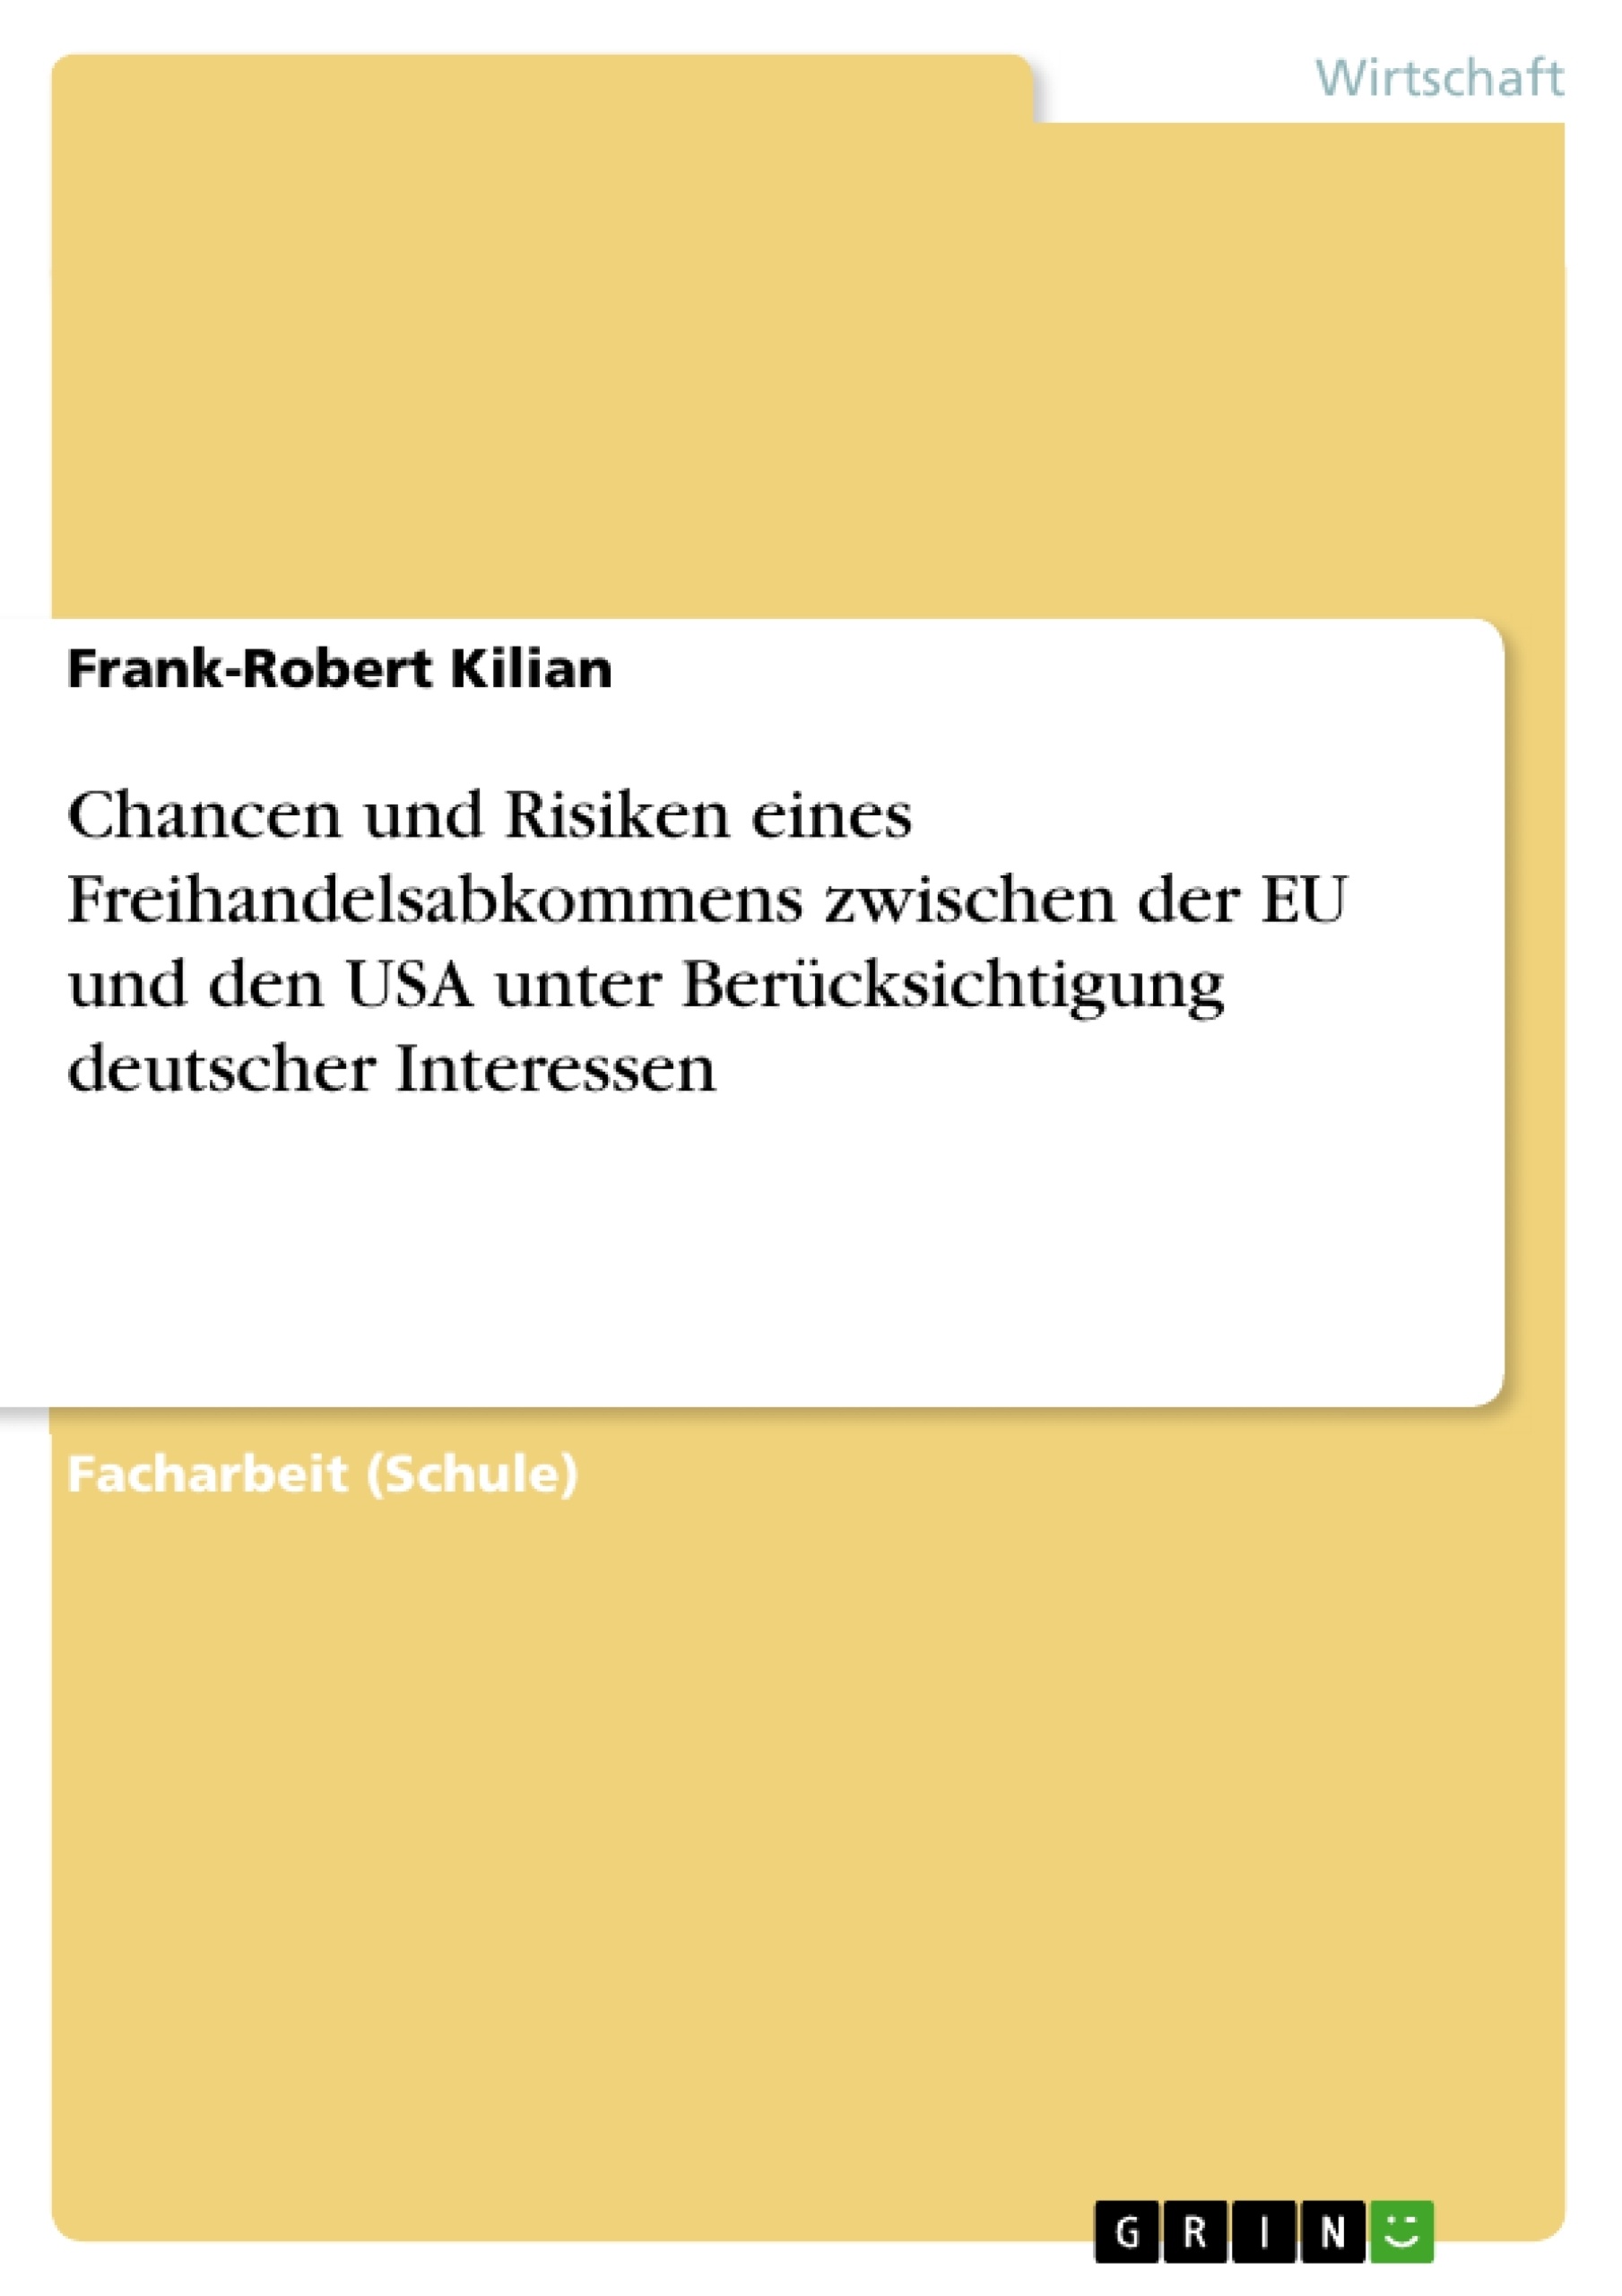 Título: Chancen und Risiken eines Freihandelsabkommens zwischen der EU und den USA unter Berücksichtigung deutscher Interessen